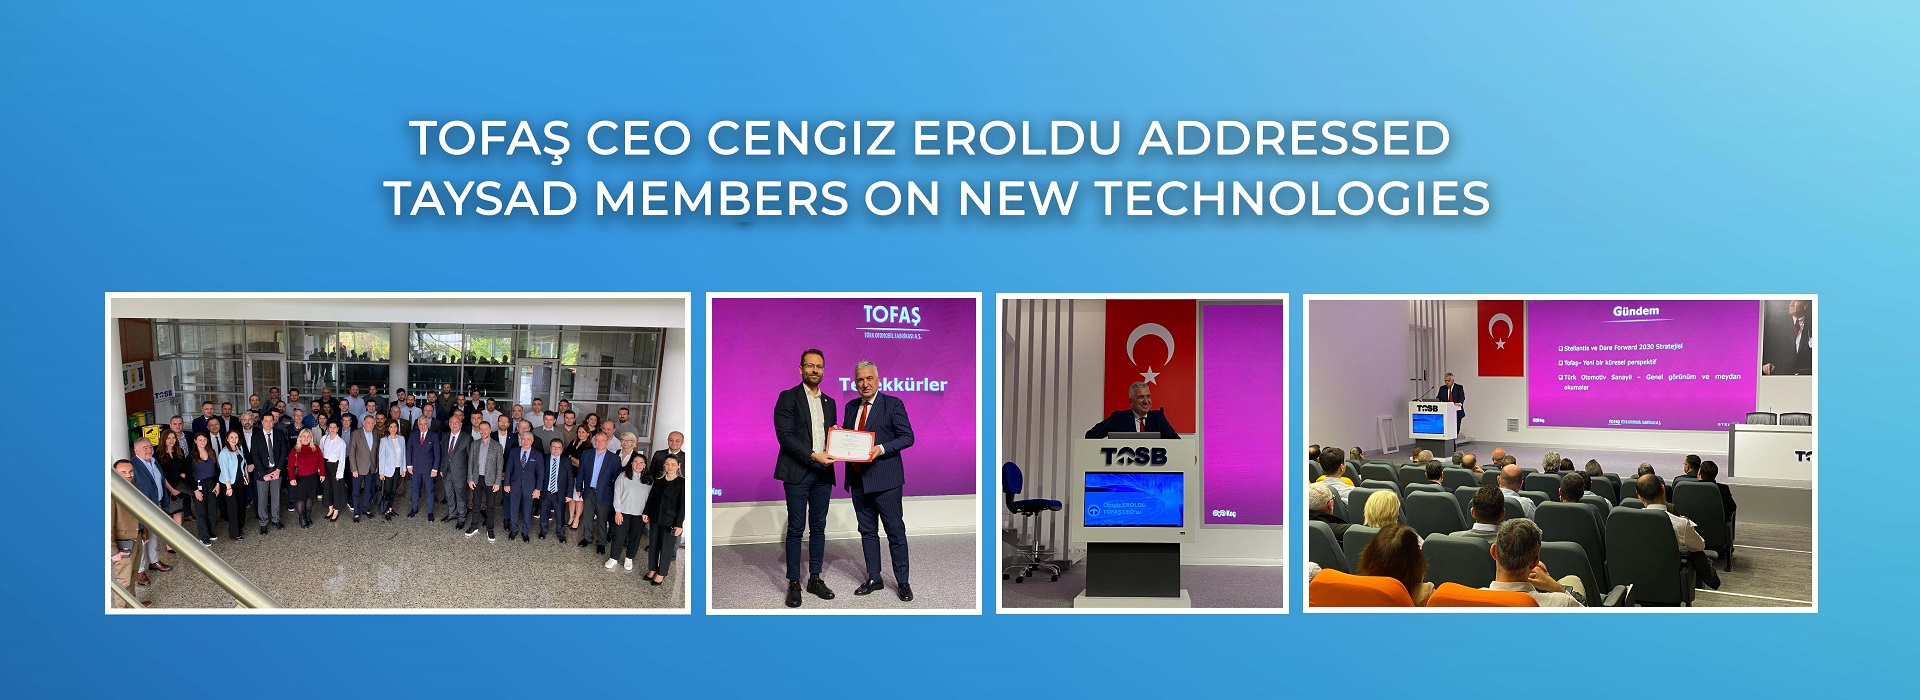 TOFAŞ CEO Cengiz Eroldu Addressed TAYSAD Members on New Technologies